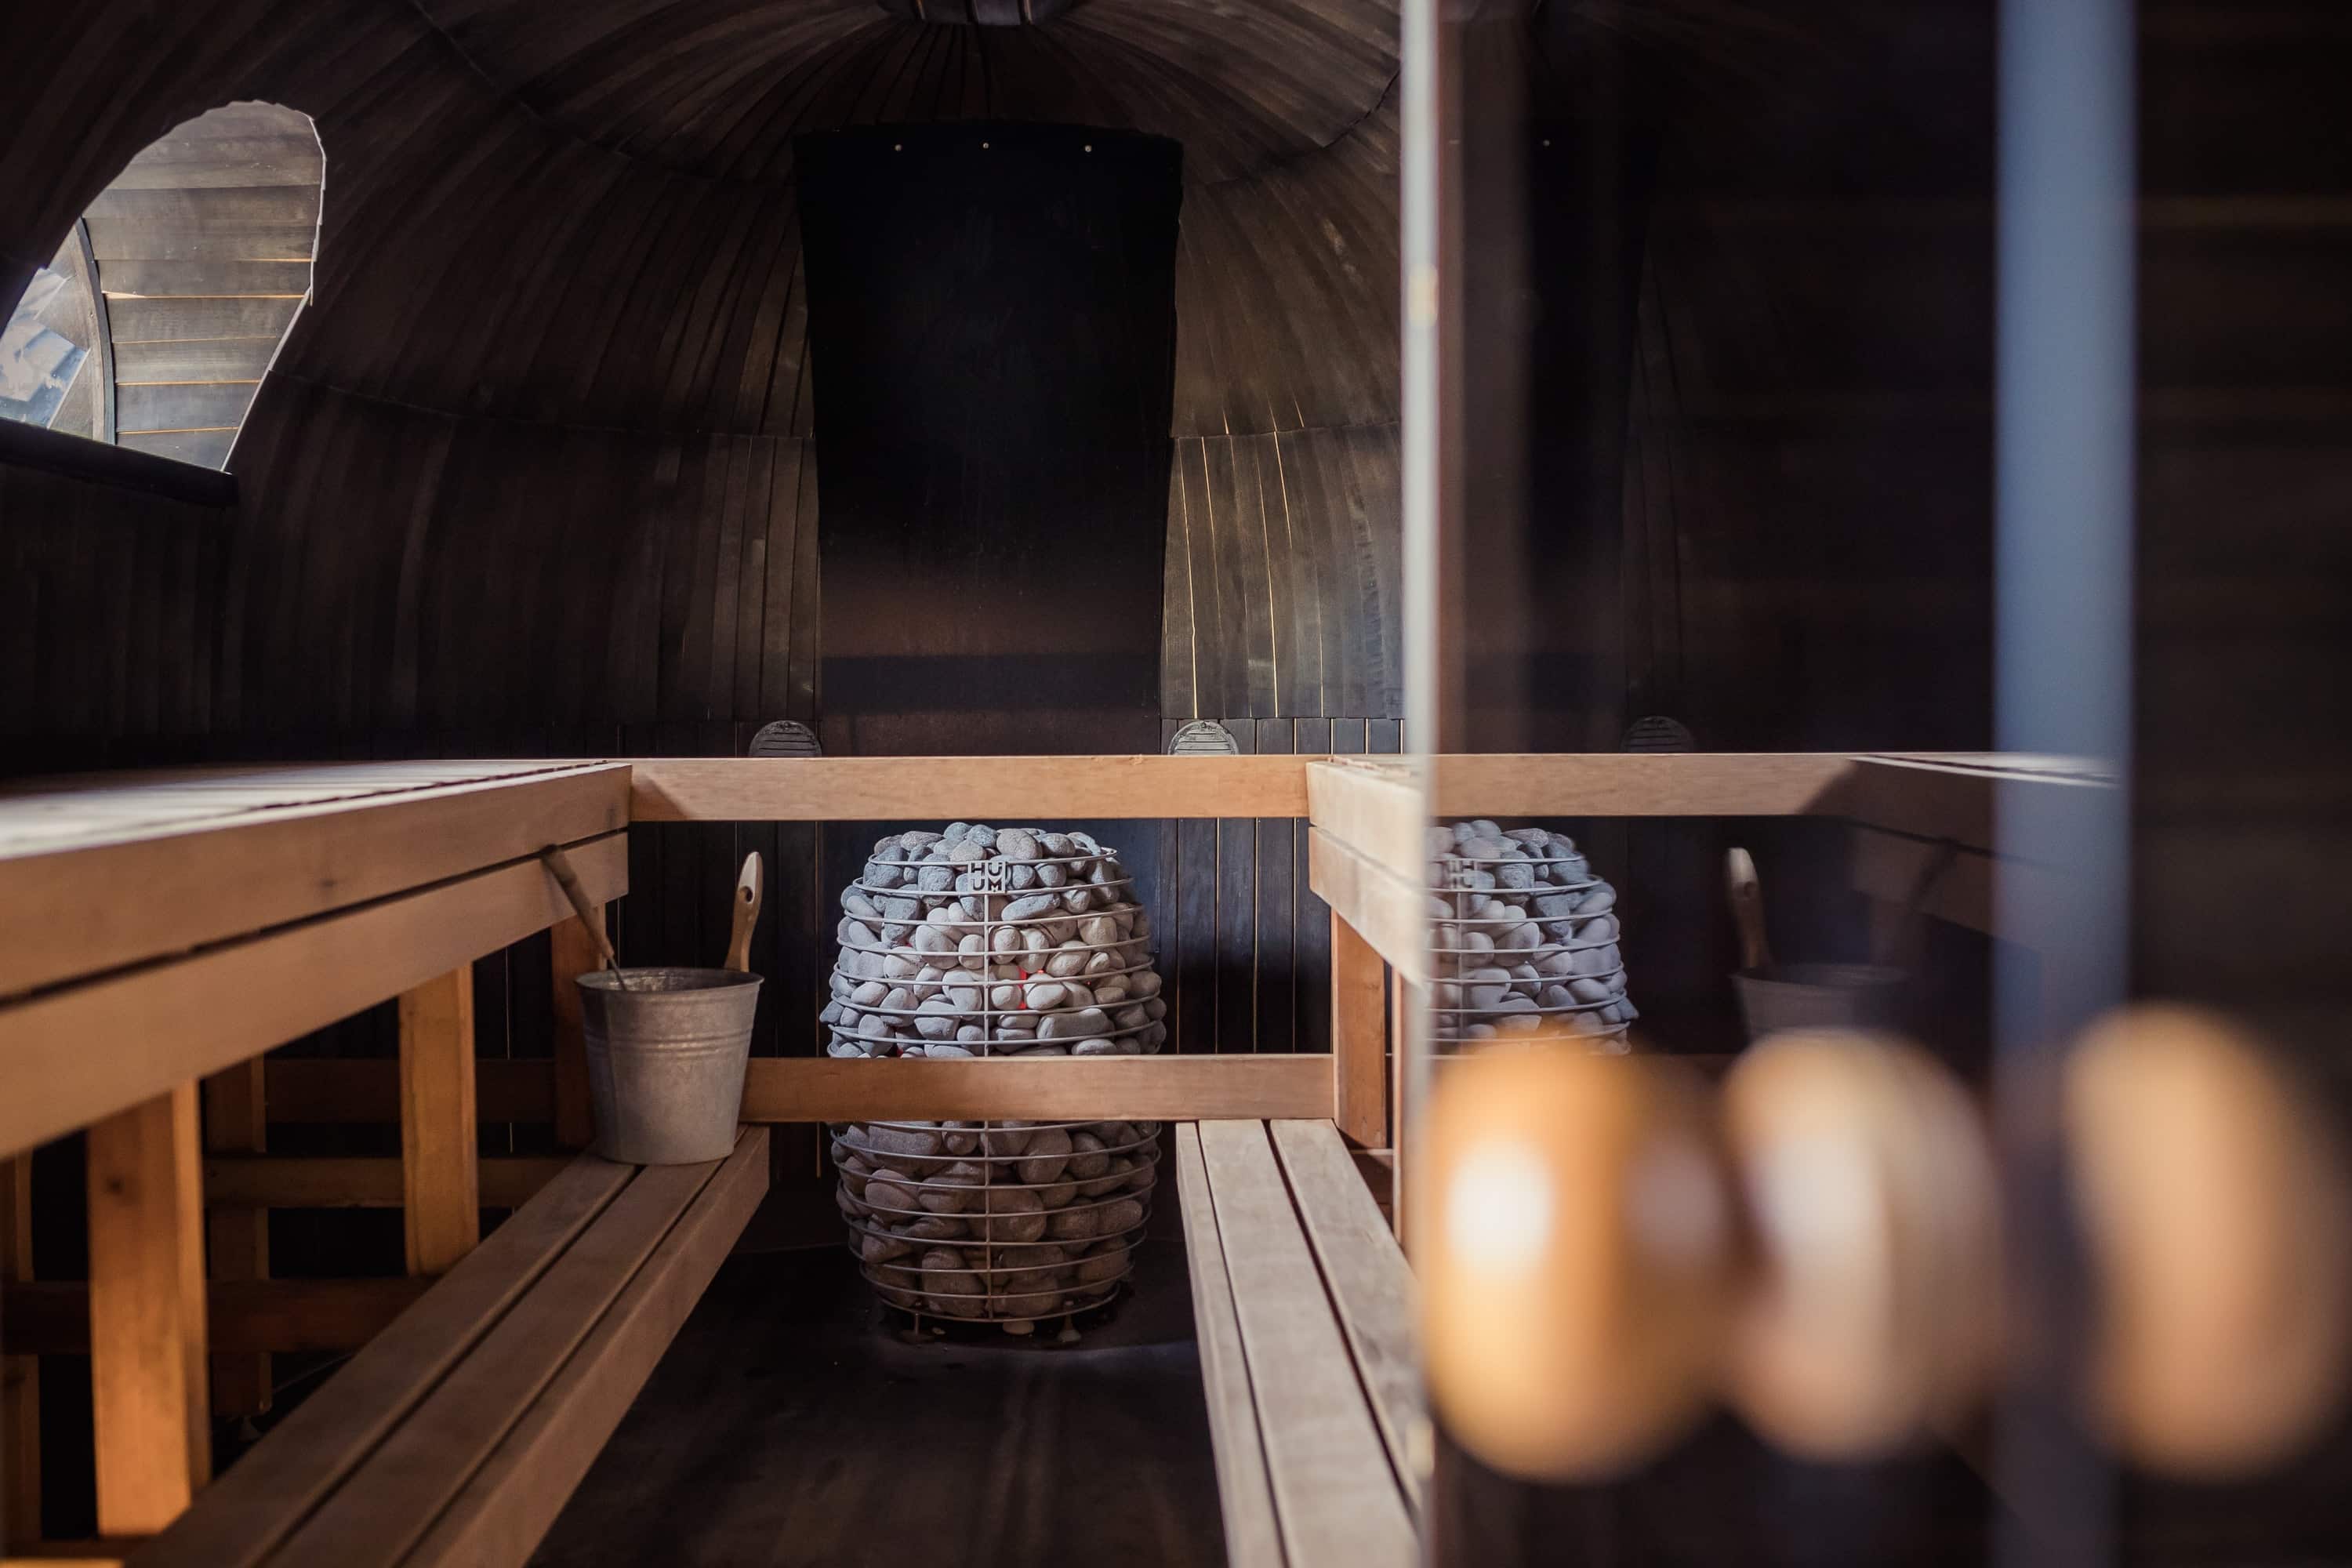 Dois-je faire appel à un professionnel pour installer un sauna chez moi ?